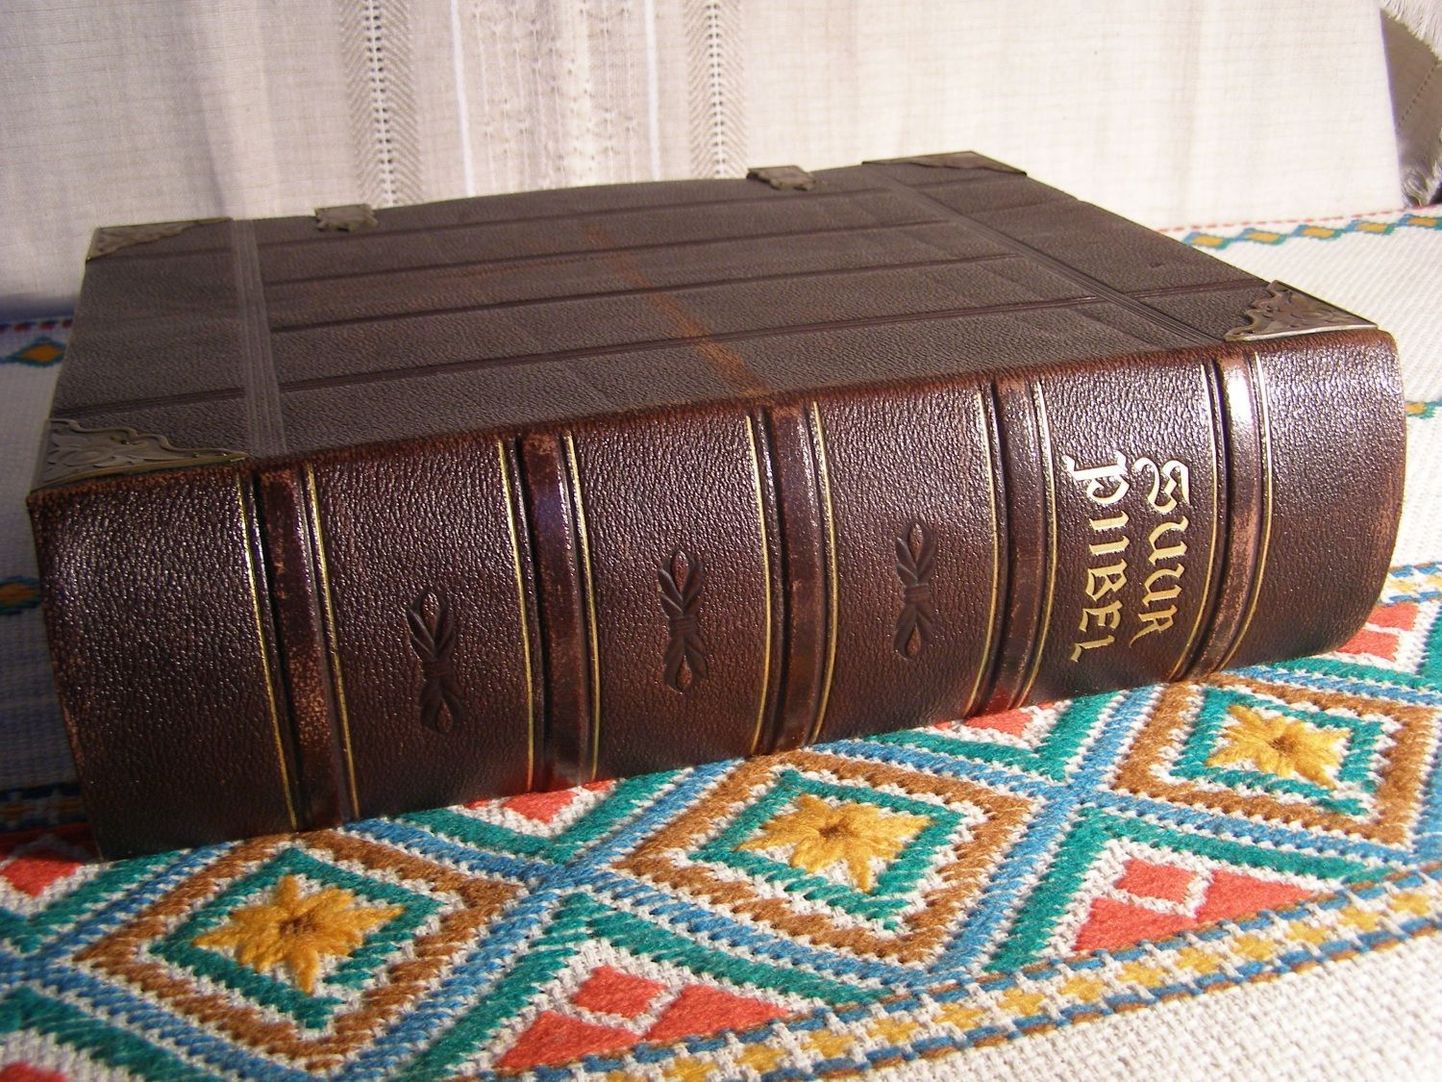 EW suur Juubeli Piibel 1938-1940